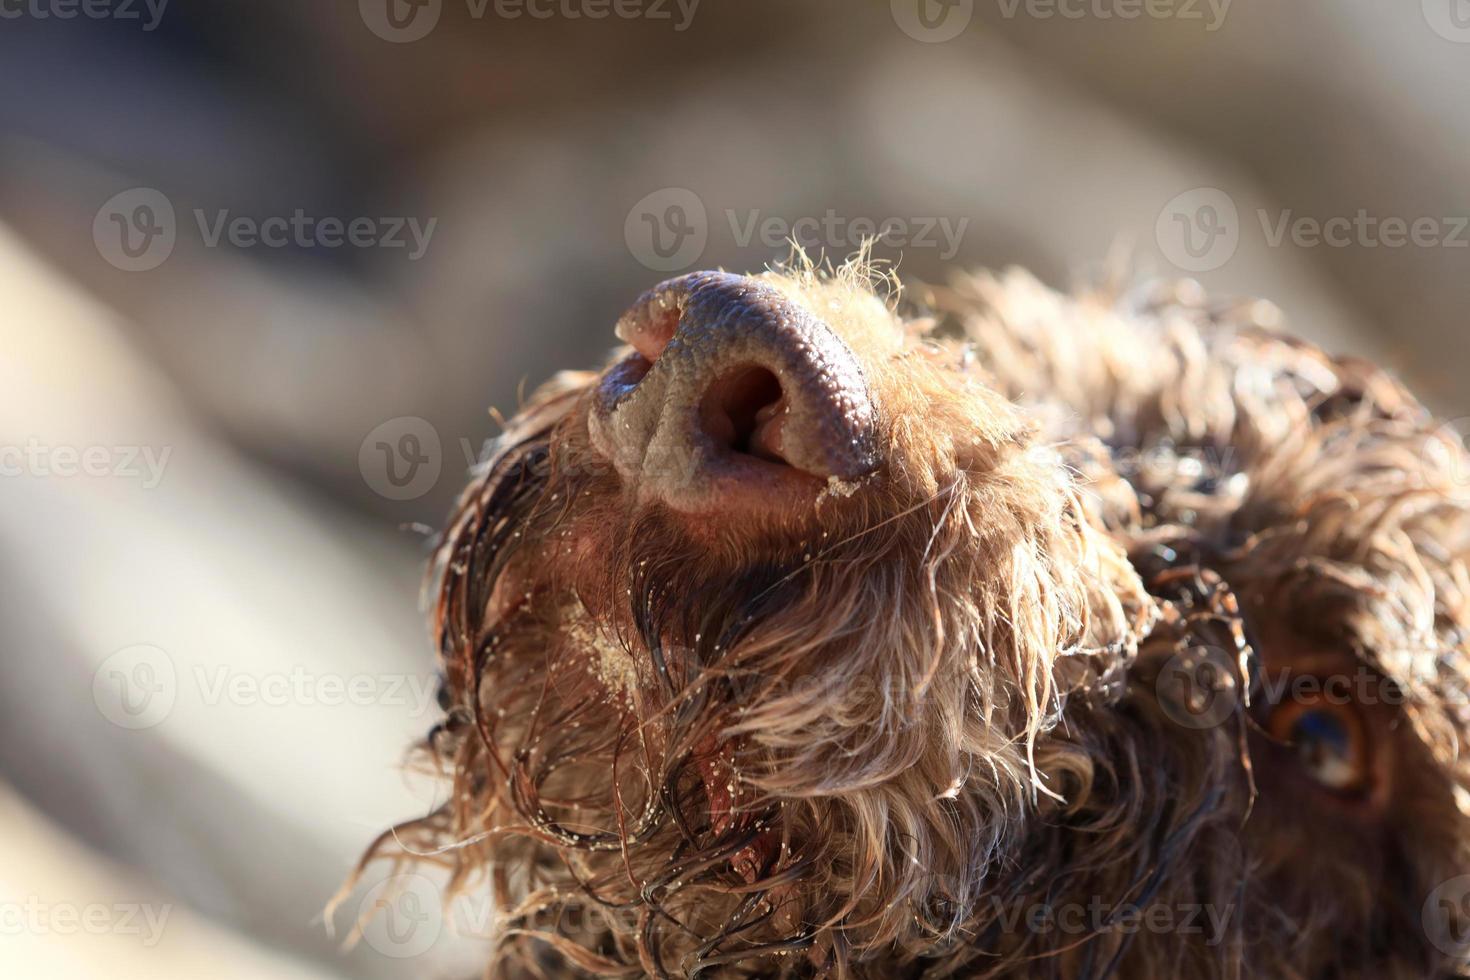 Retrato de perro marrón macro lagotto romagnolo truffle hunter Creta Grecia foto